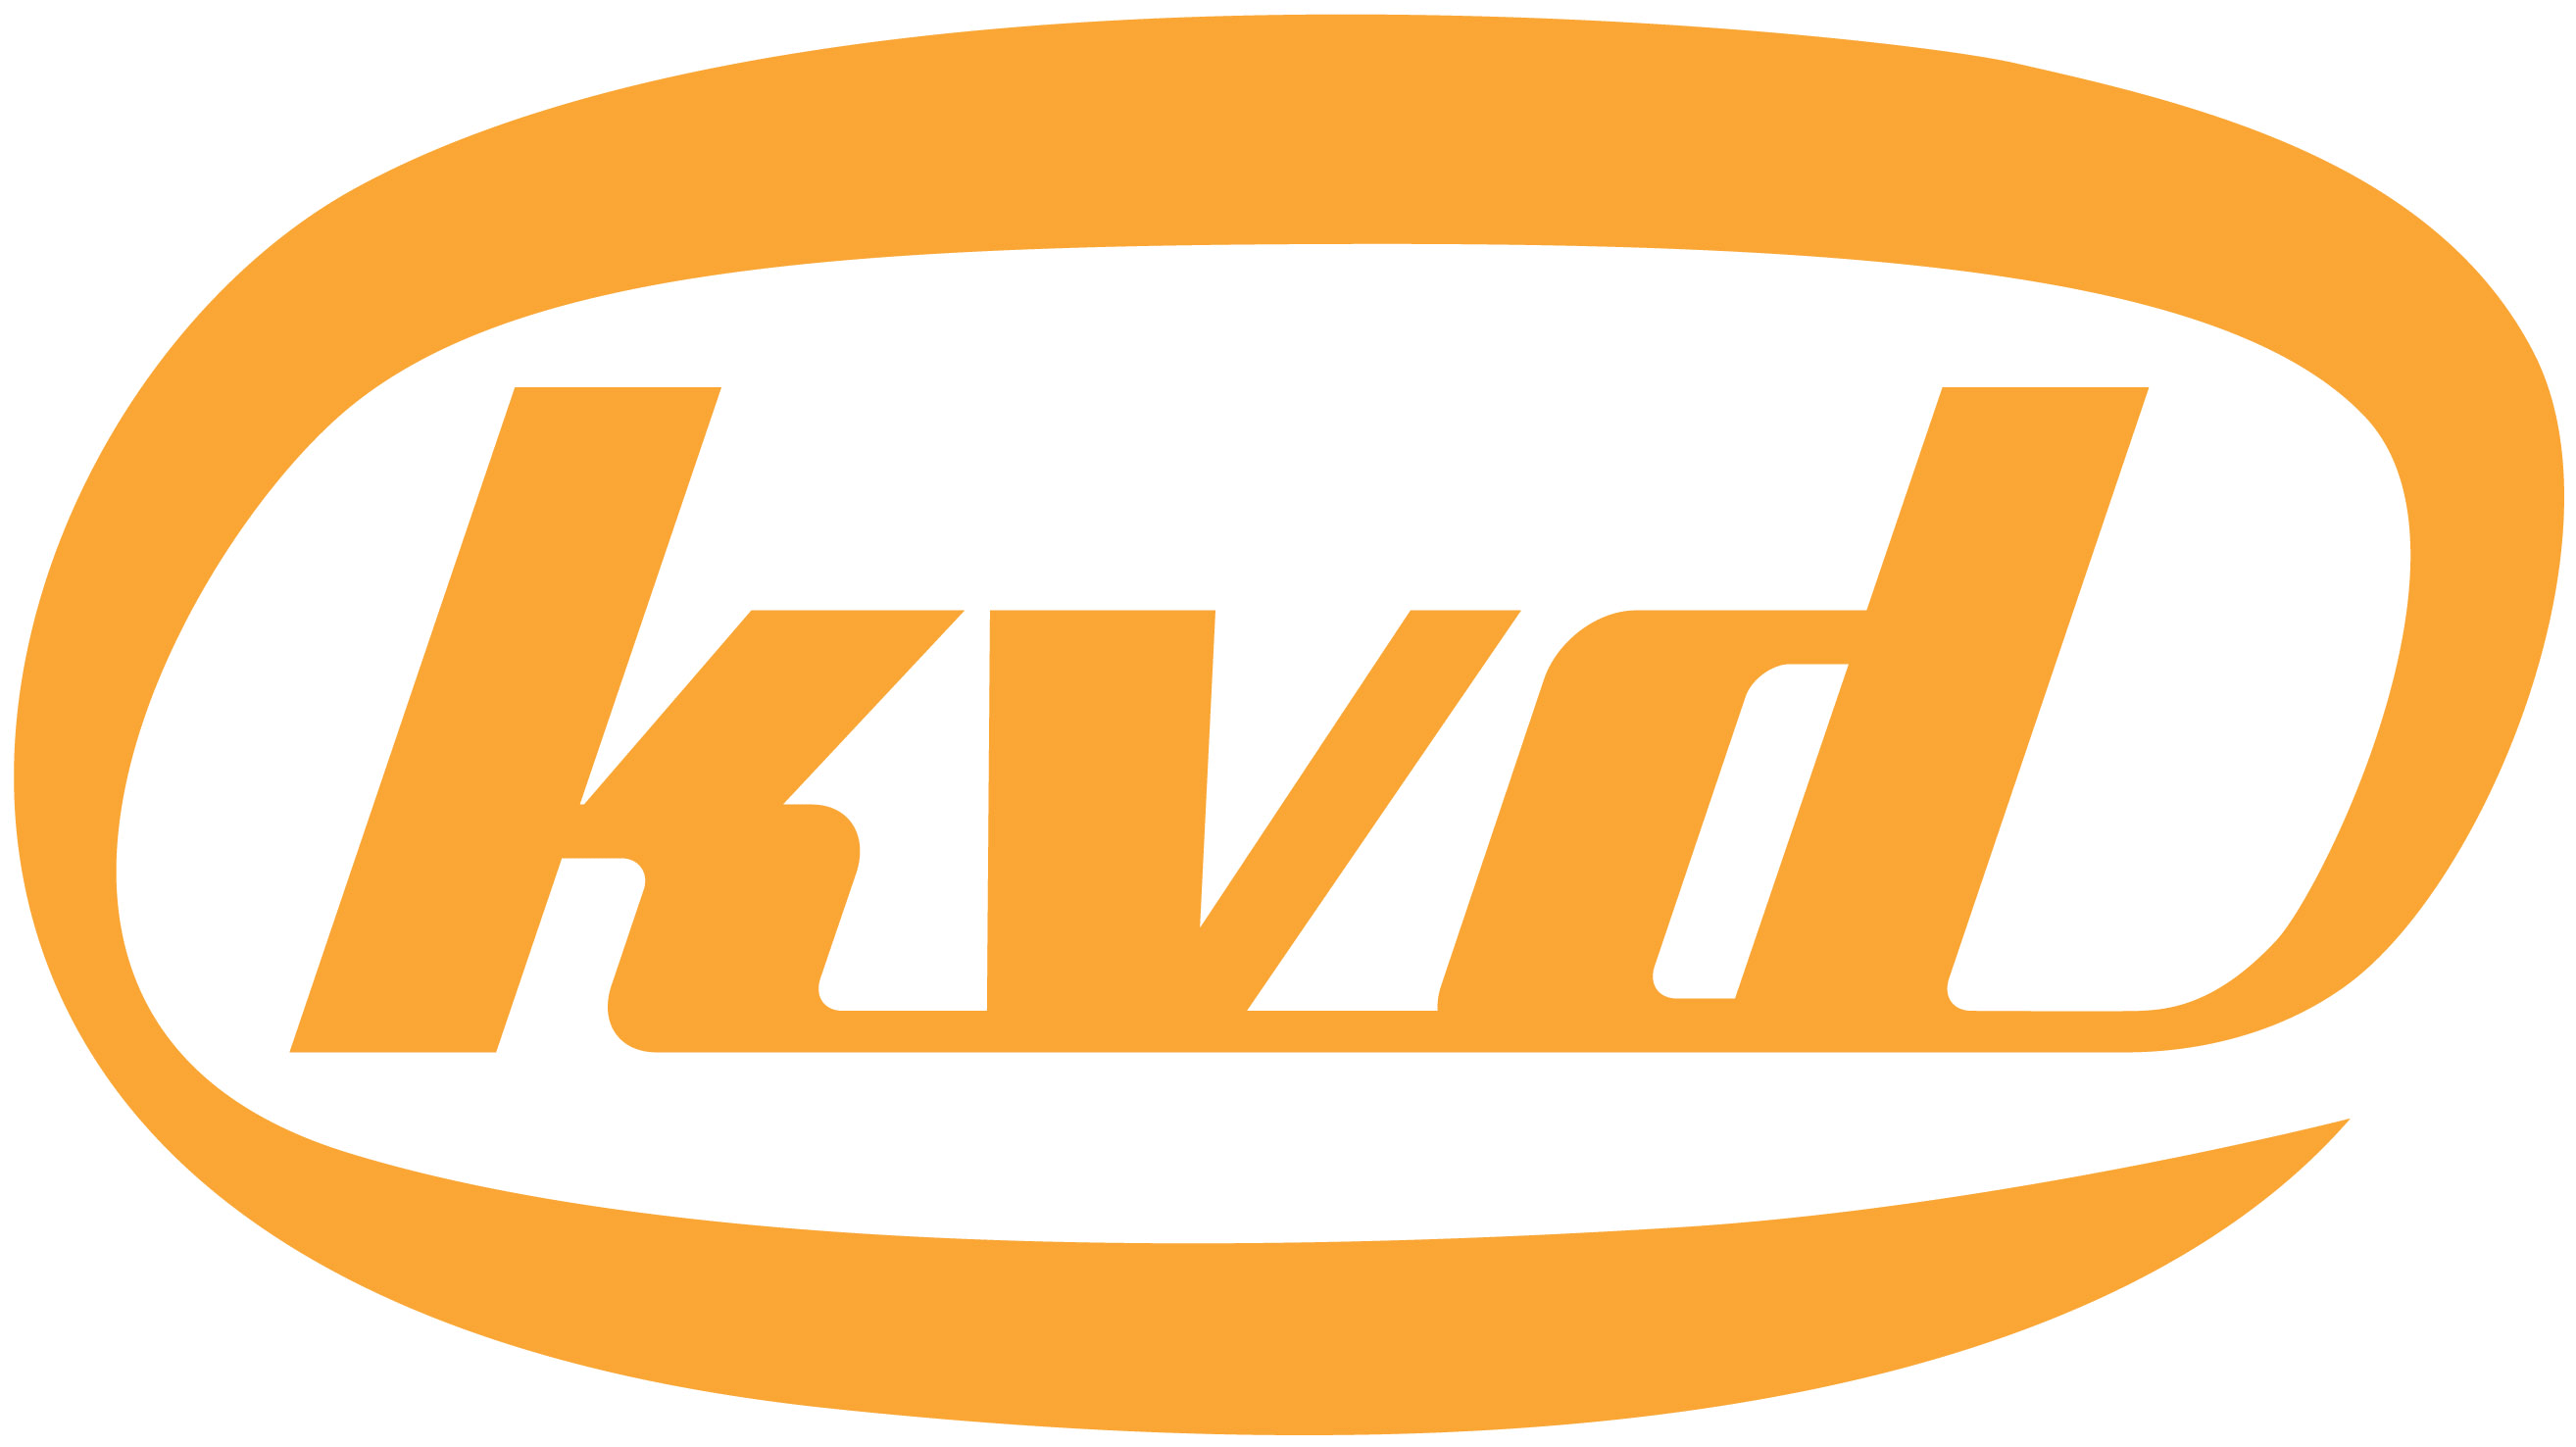 KVD Logo - KVD WIKI.png